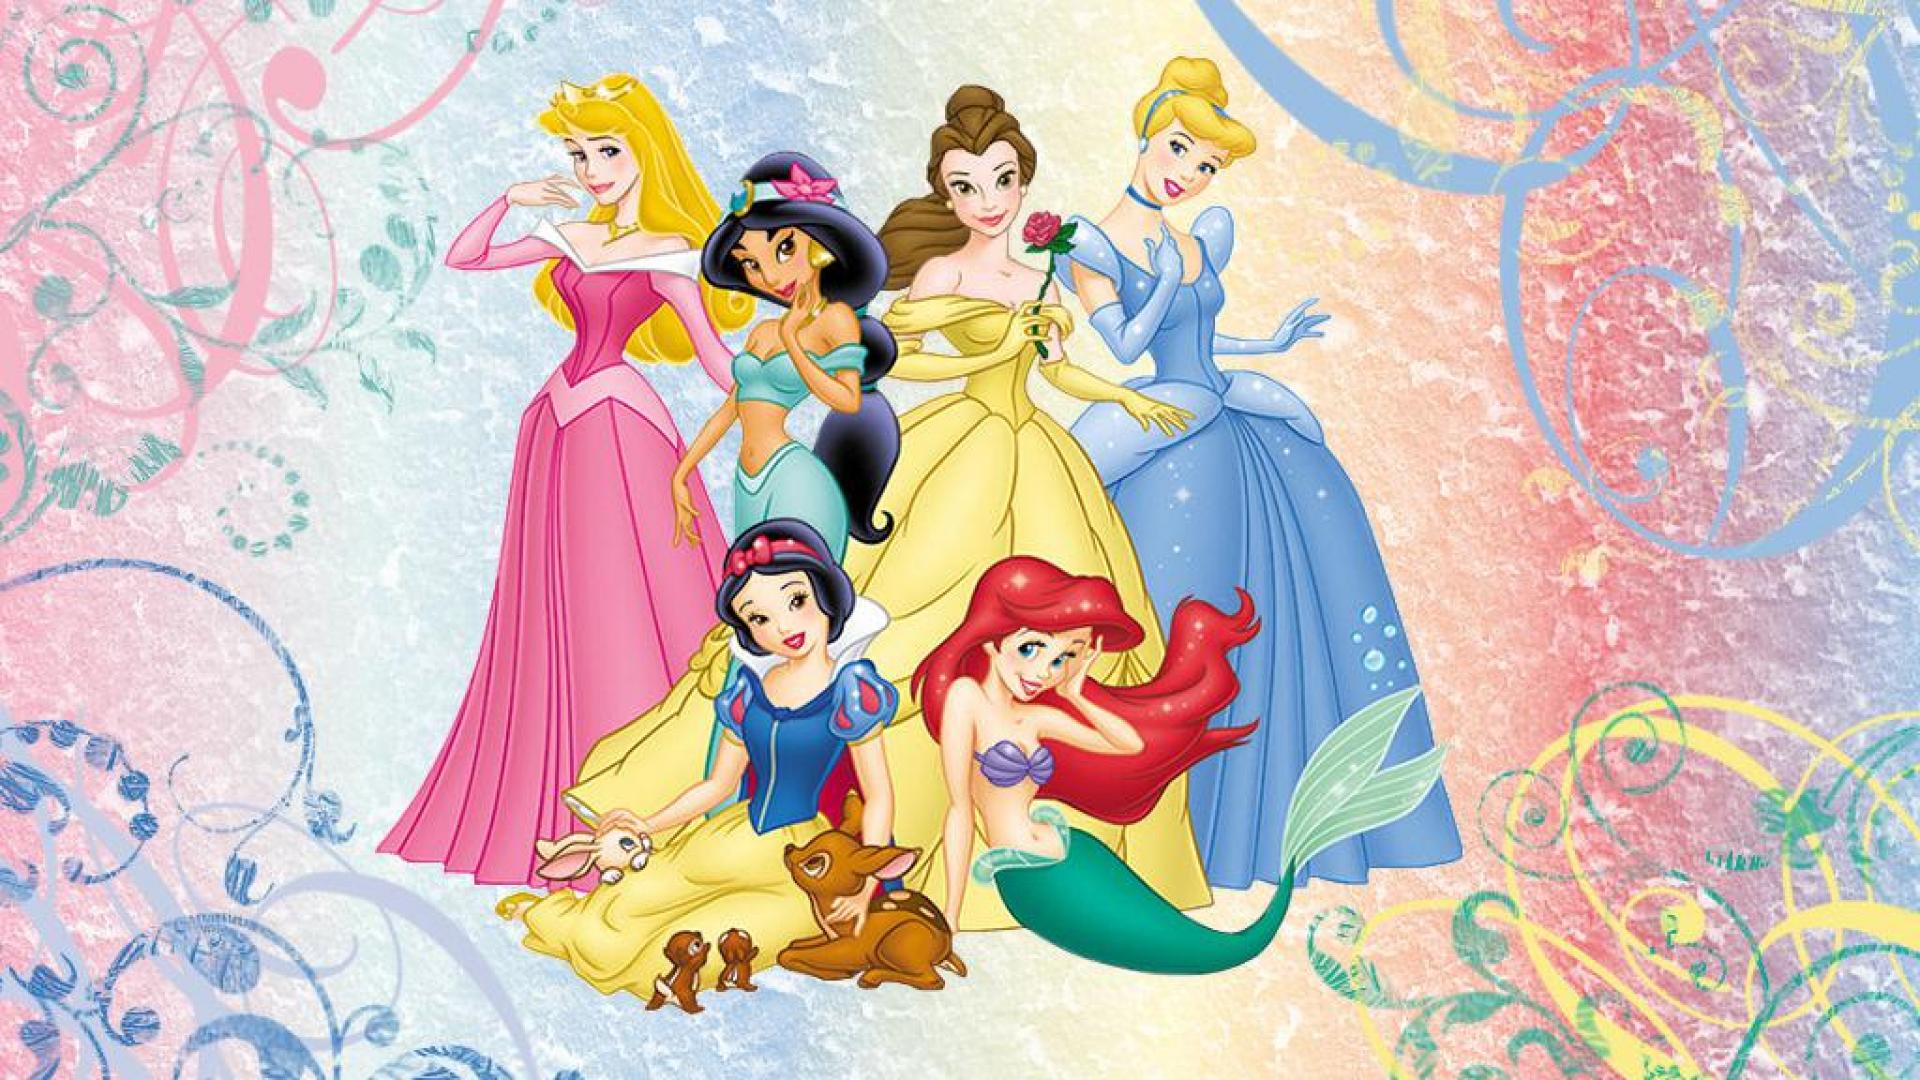 Disney princesses - (#150142) - High Quality and Resolution ...